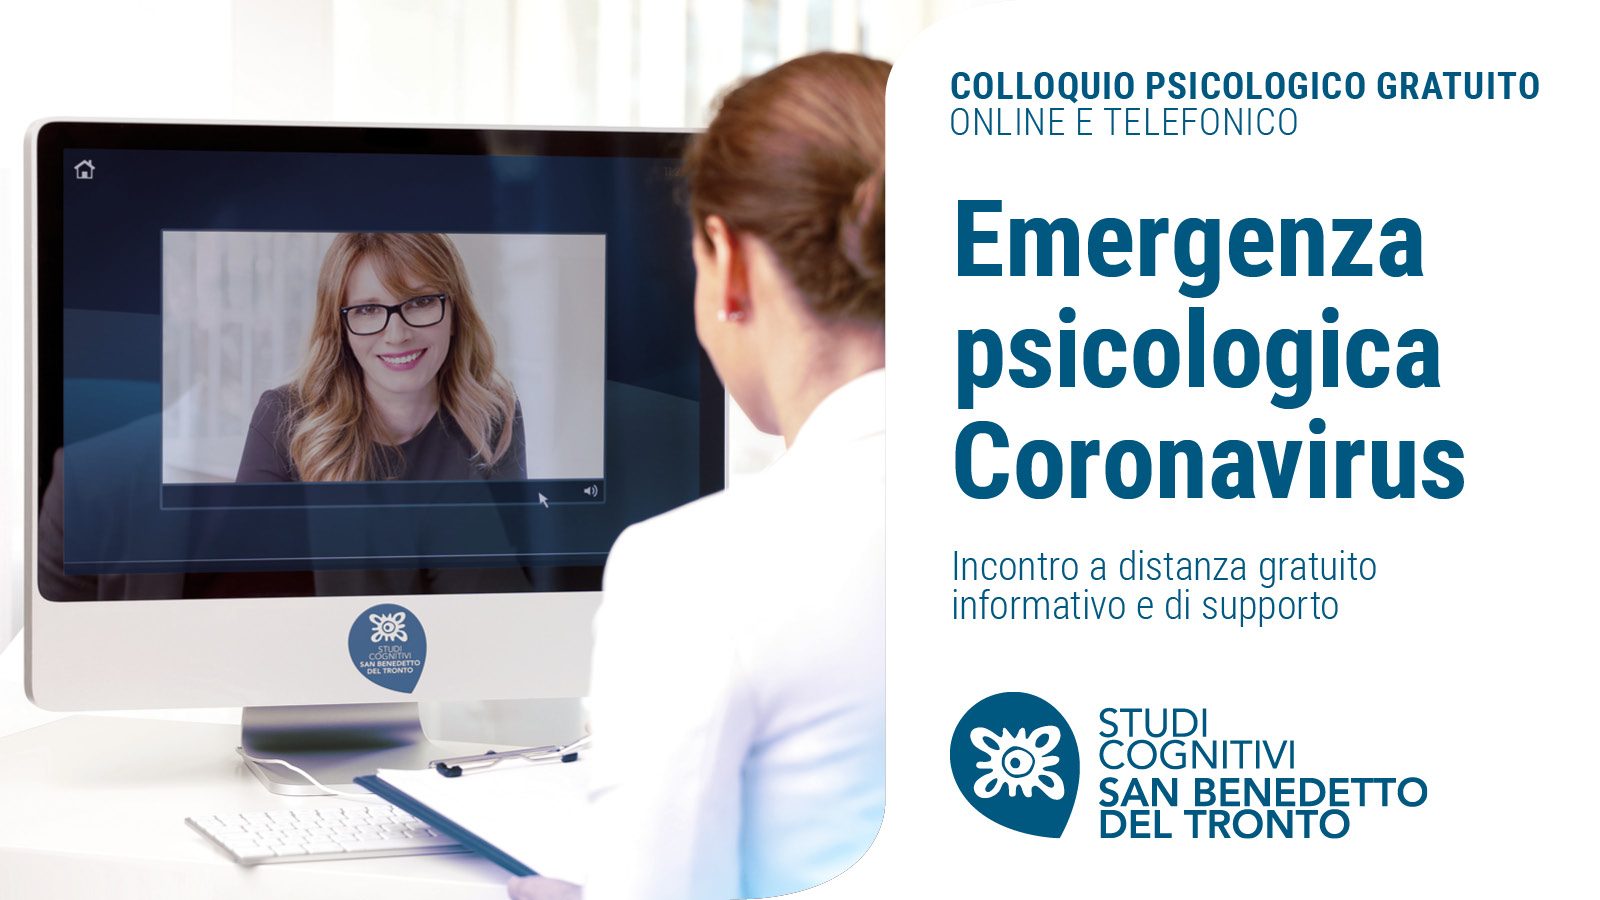 Coronavirus colloquio psicologico gratuito - San Benedetto del Tronto